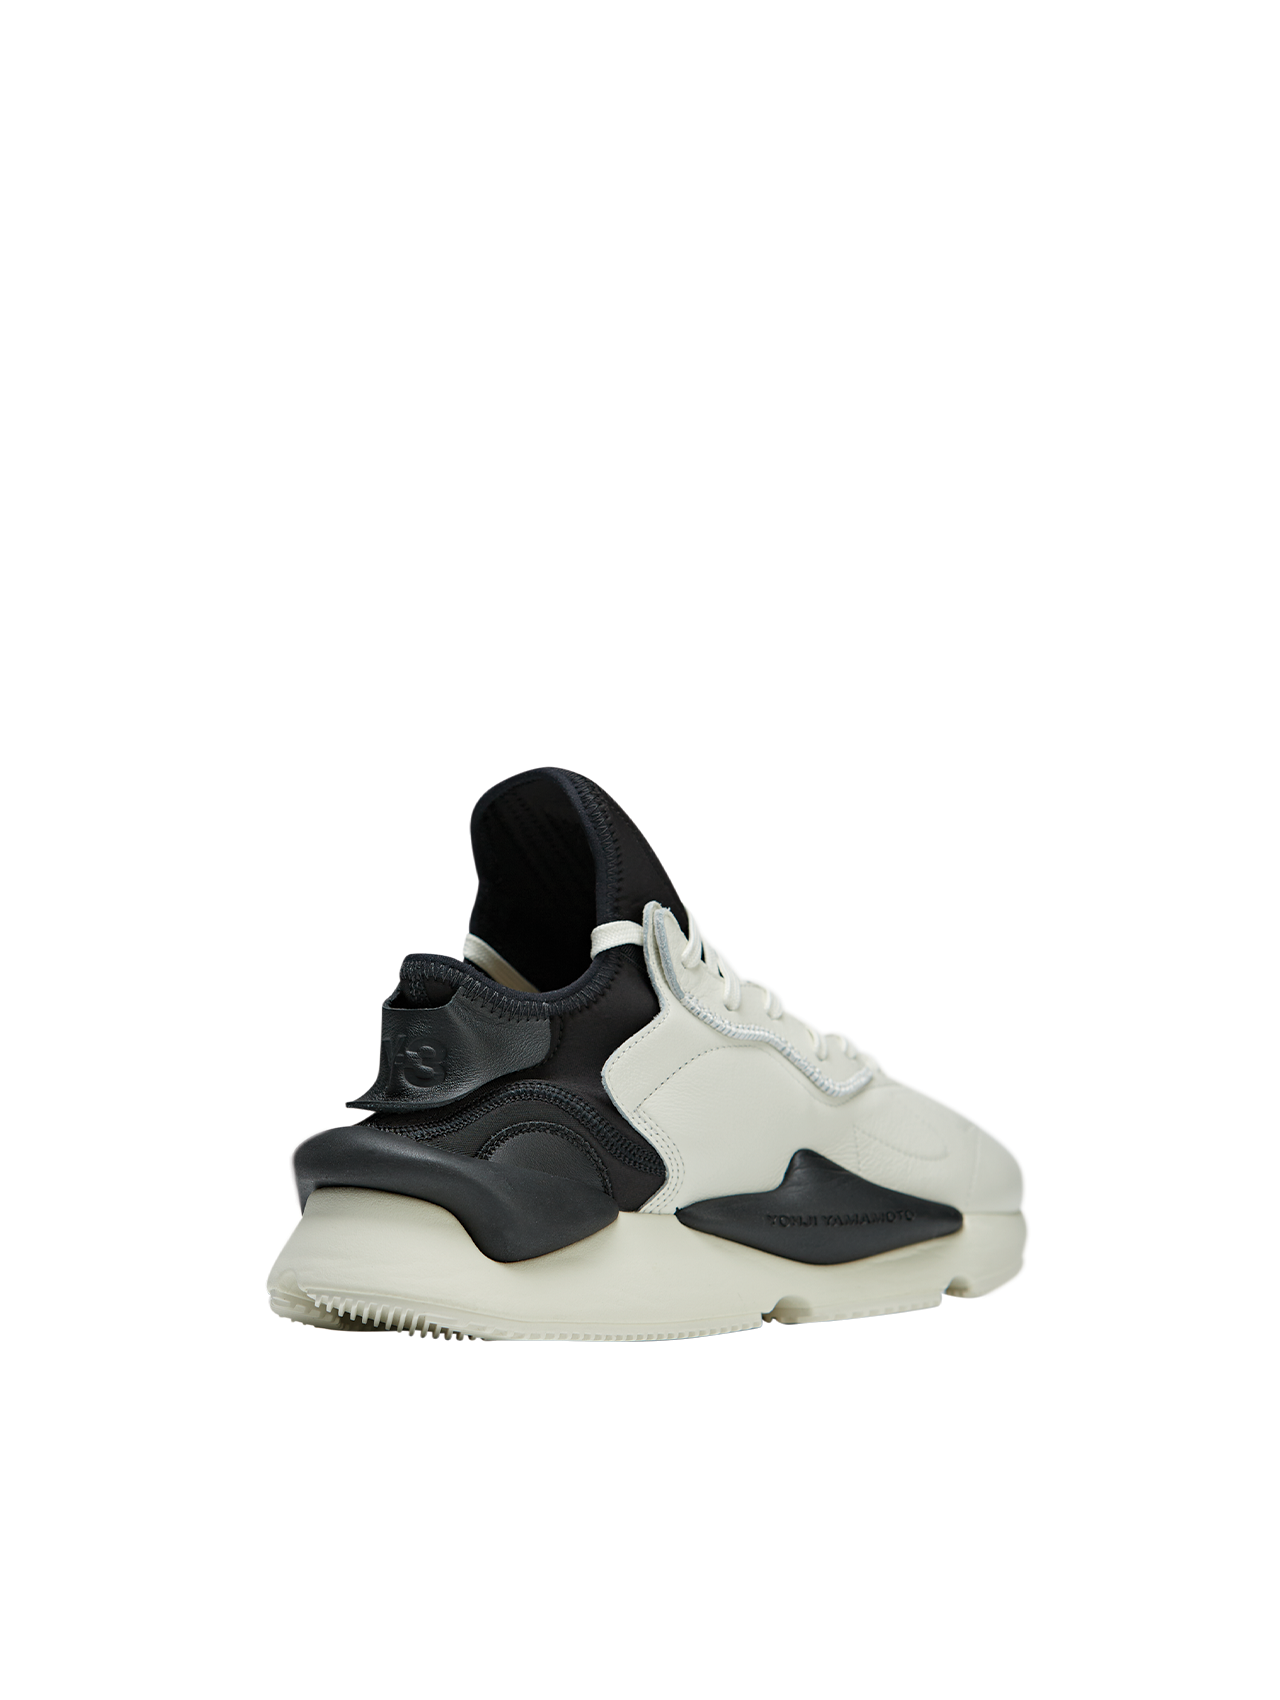 Y-3 Off White/Black Kaiwa Sneakers